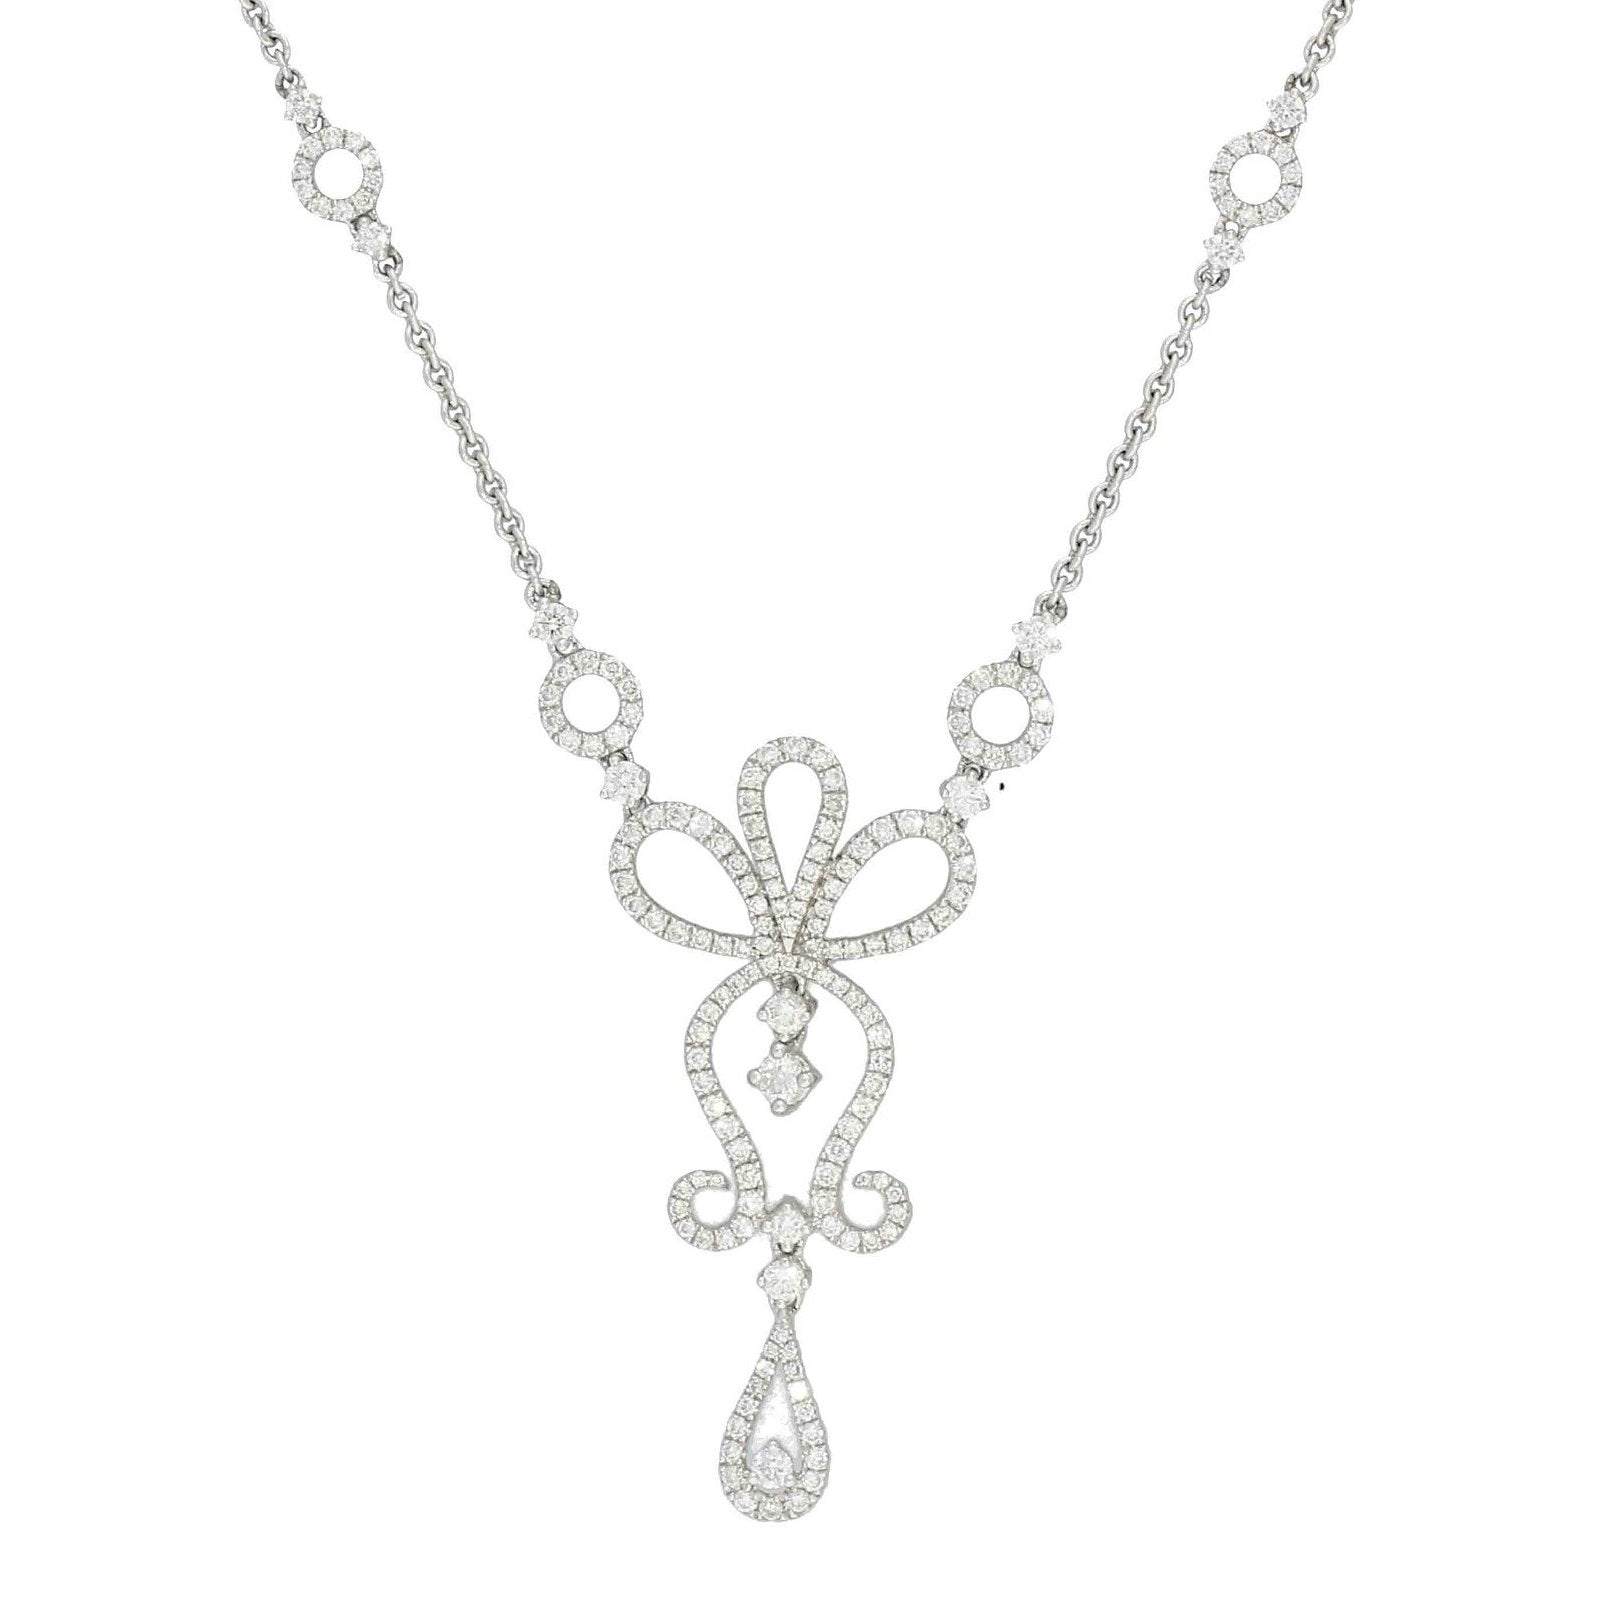  Diamond Necklace 18ct White Gold Diamond Fancy Ornate Necklace